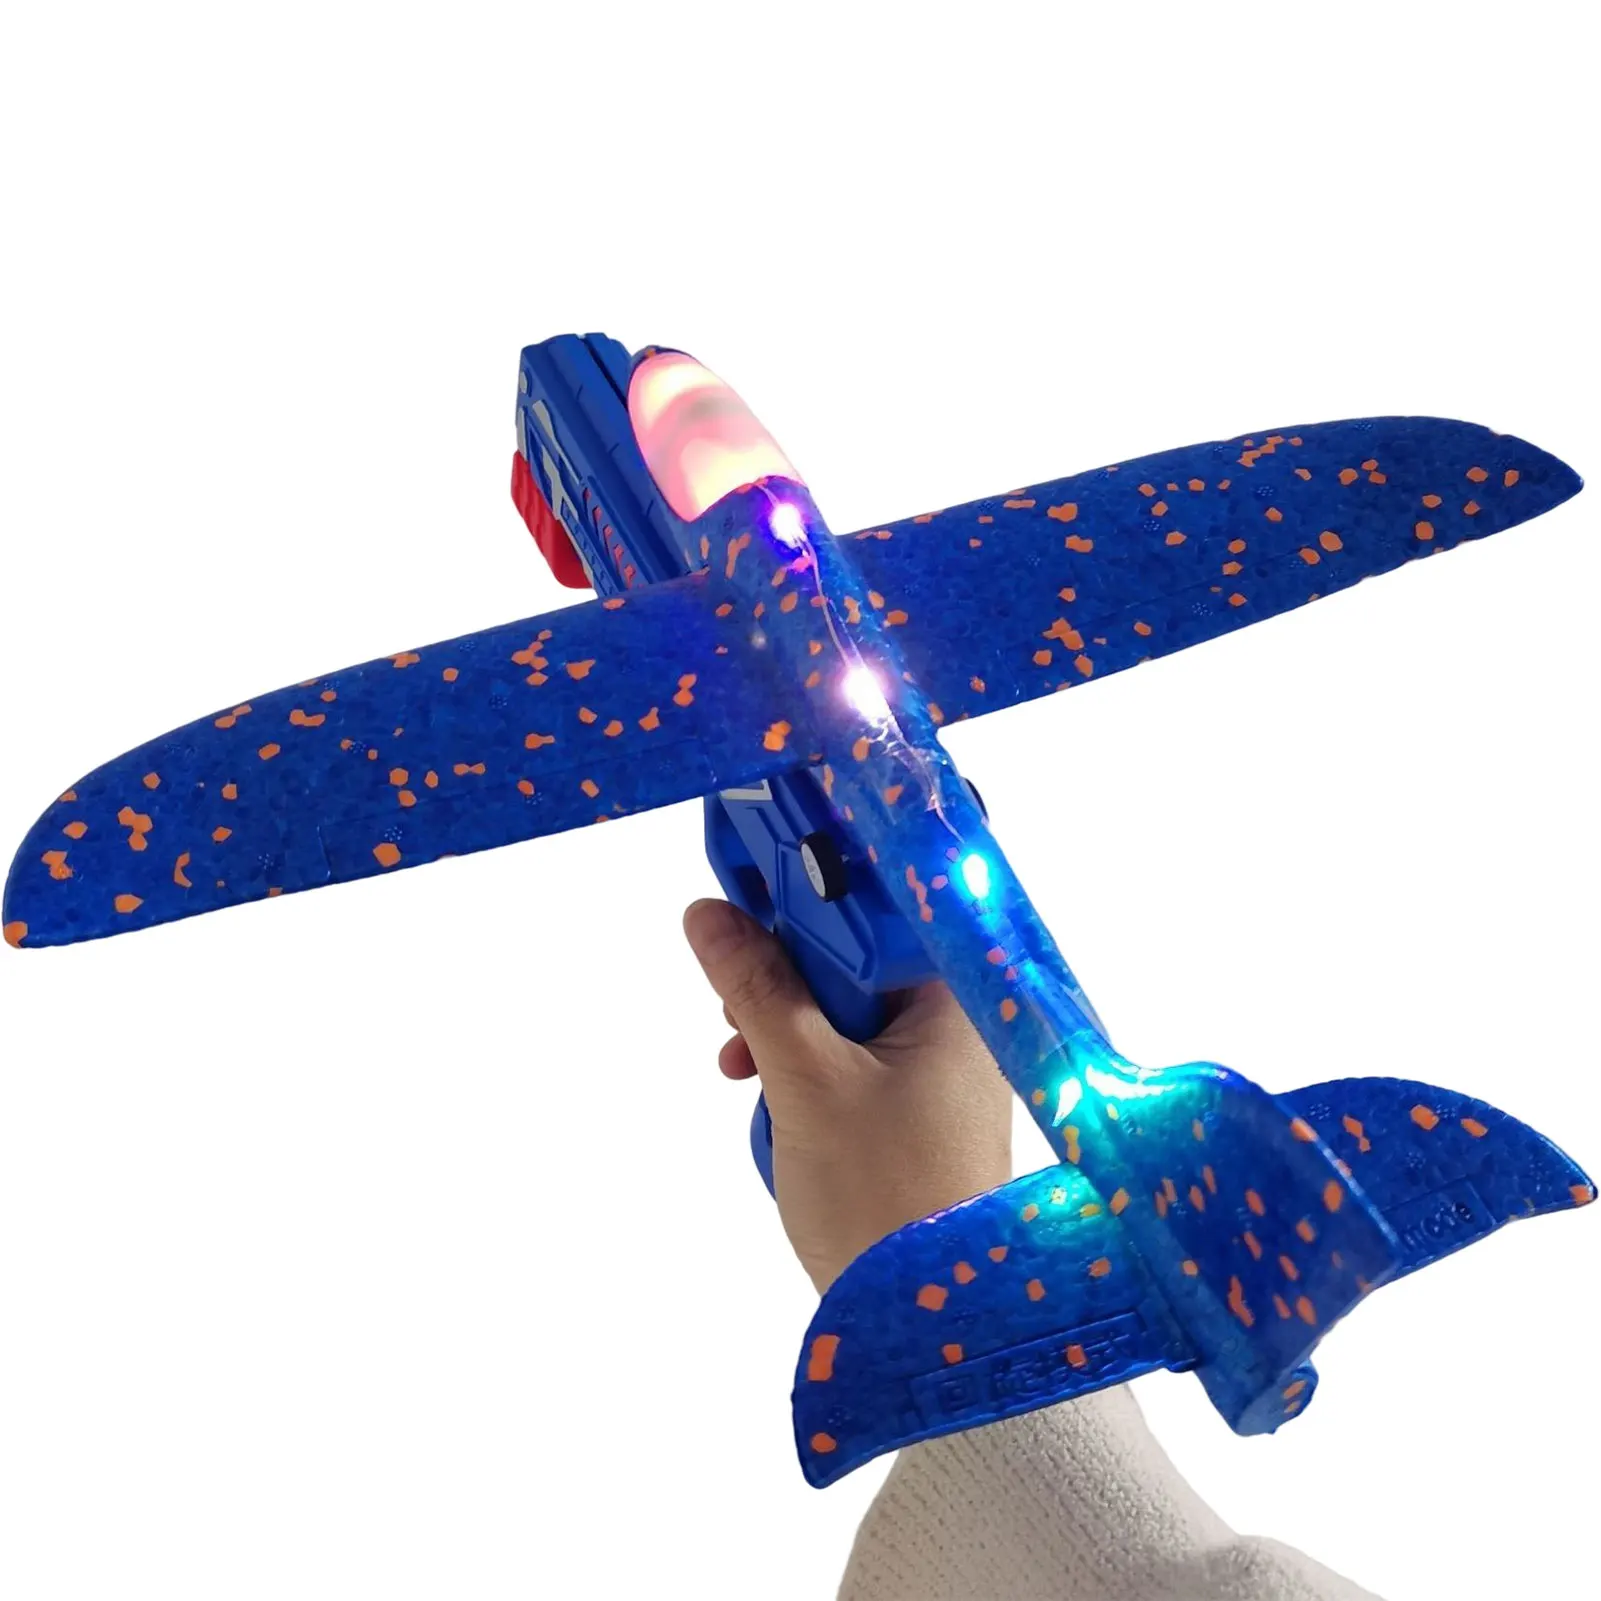 

Пусковое устройство для самолета, игрушки, прочная модель для выброса в одно нажатие, пенопластовый самолет, веселая игрушка для дома и улиц...